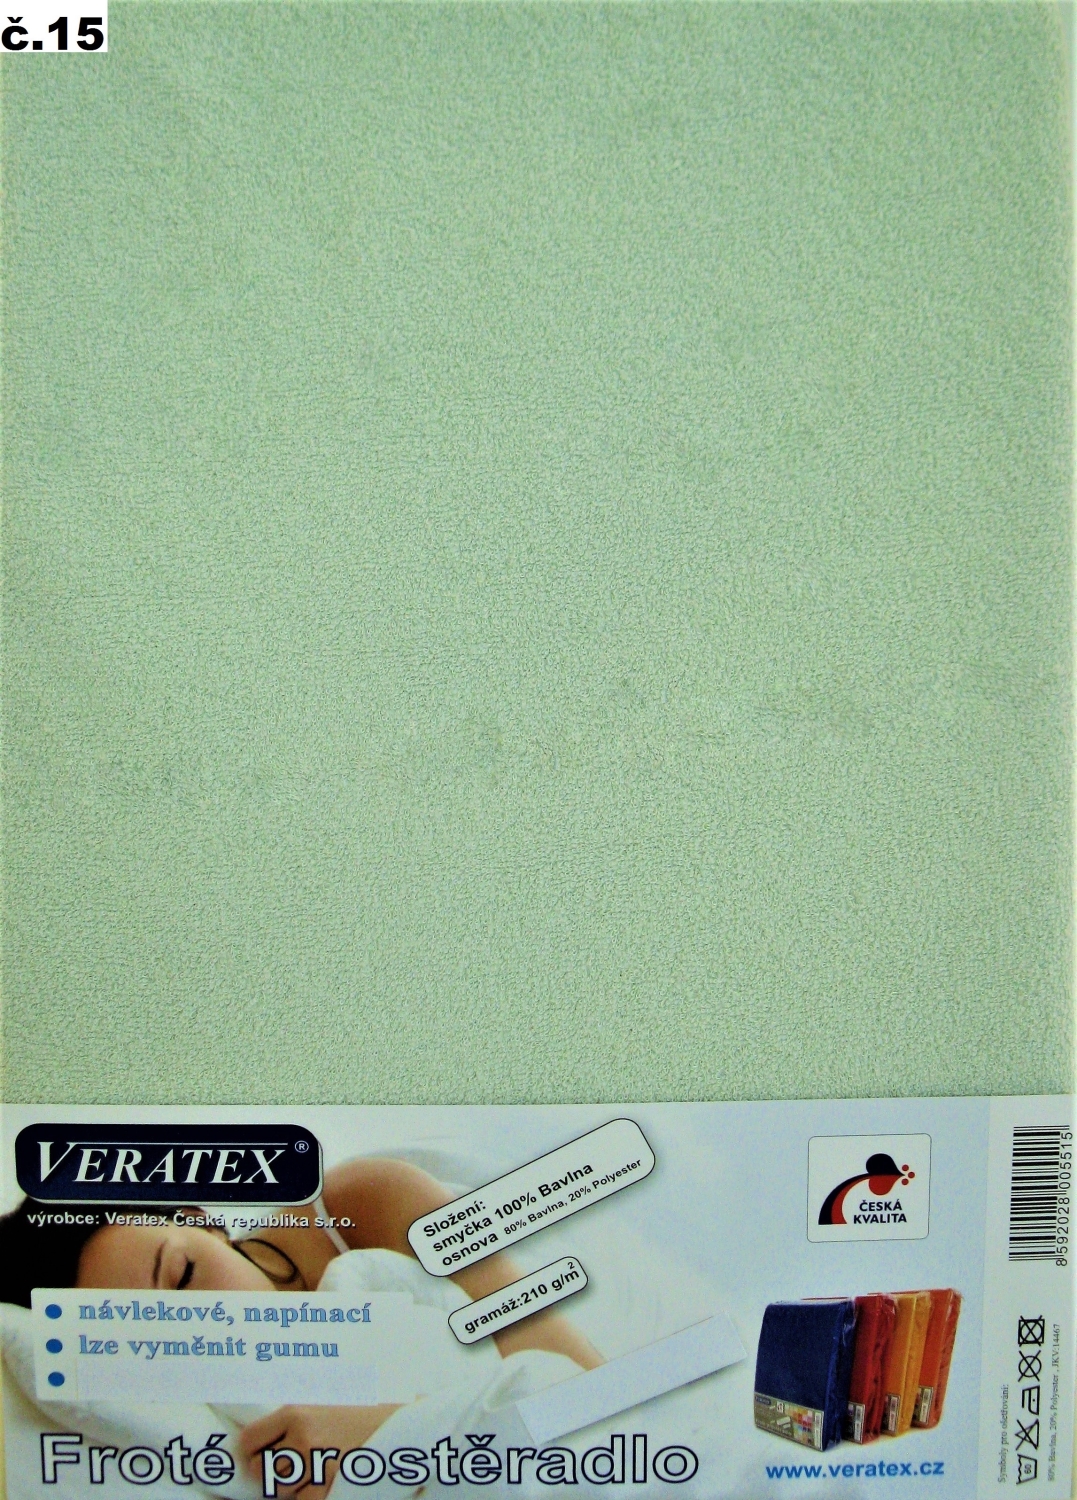 Veratex Froté prostěradlo jednolůžko 90x200/25cm (č.15 sv.zelené)